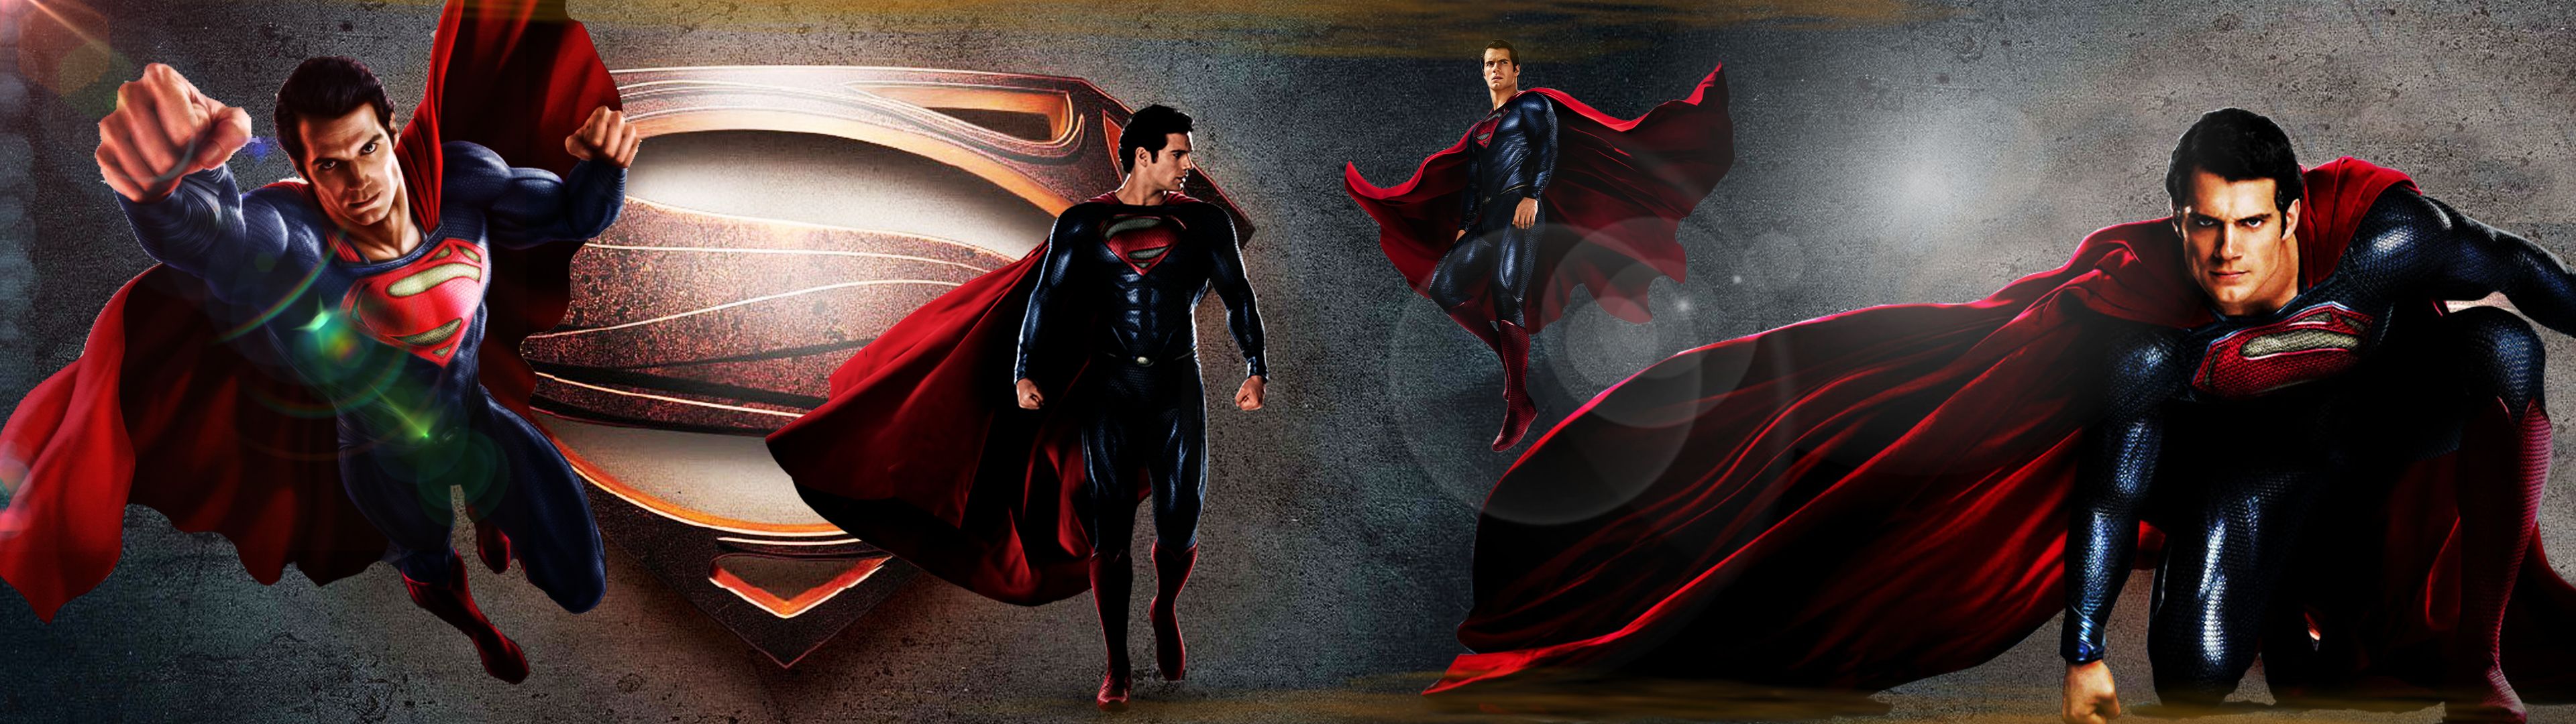 Download Superman Henry Cavill, Superman, Henry, Cavill Wallpaper